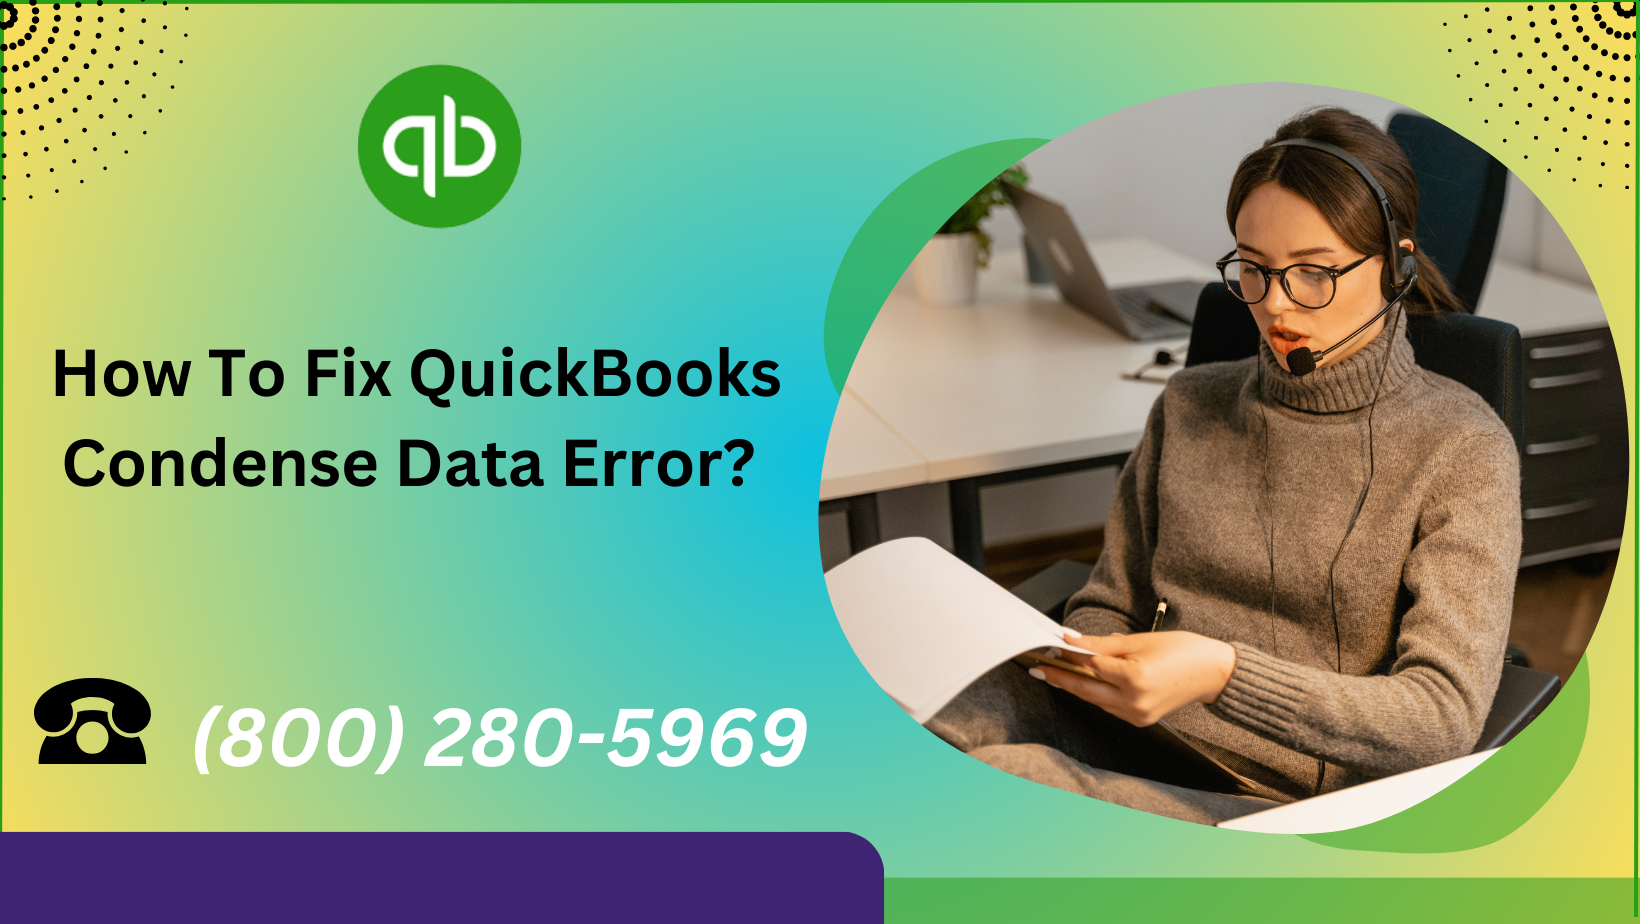 the QuickBooks Condense Data